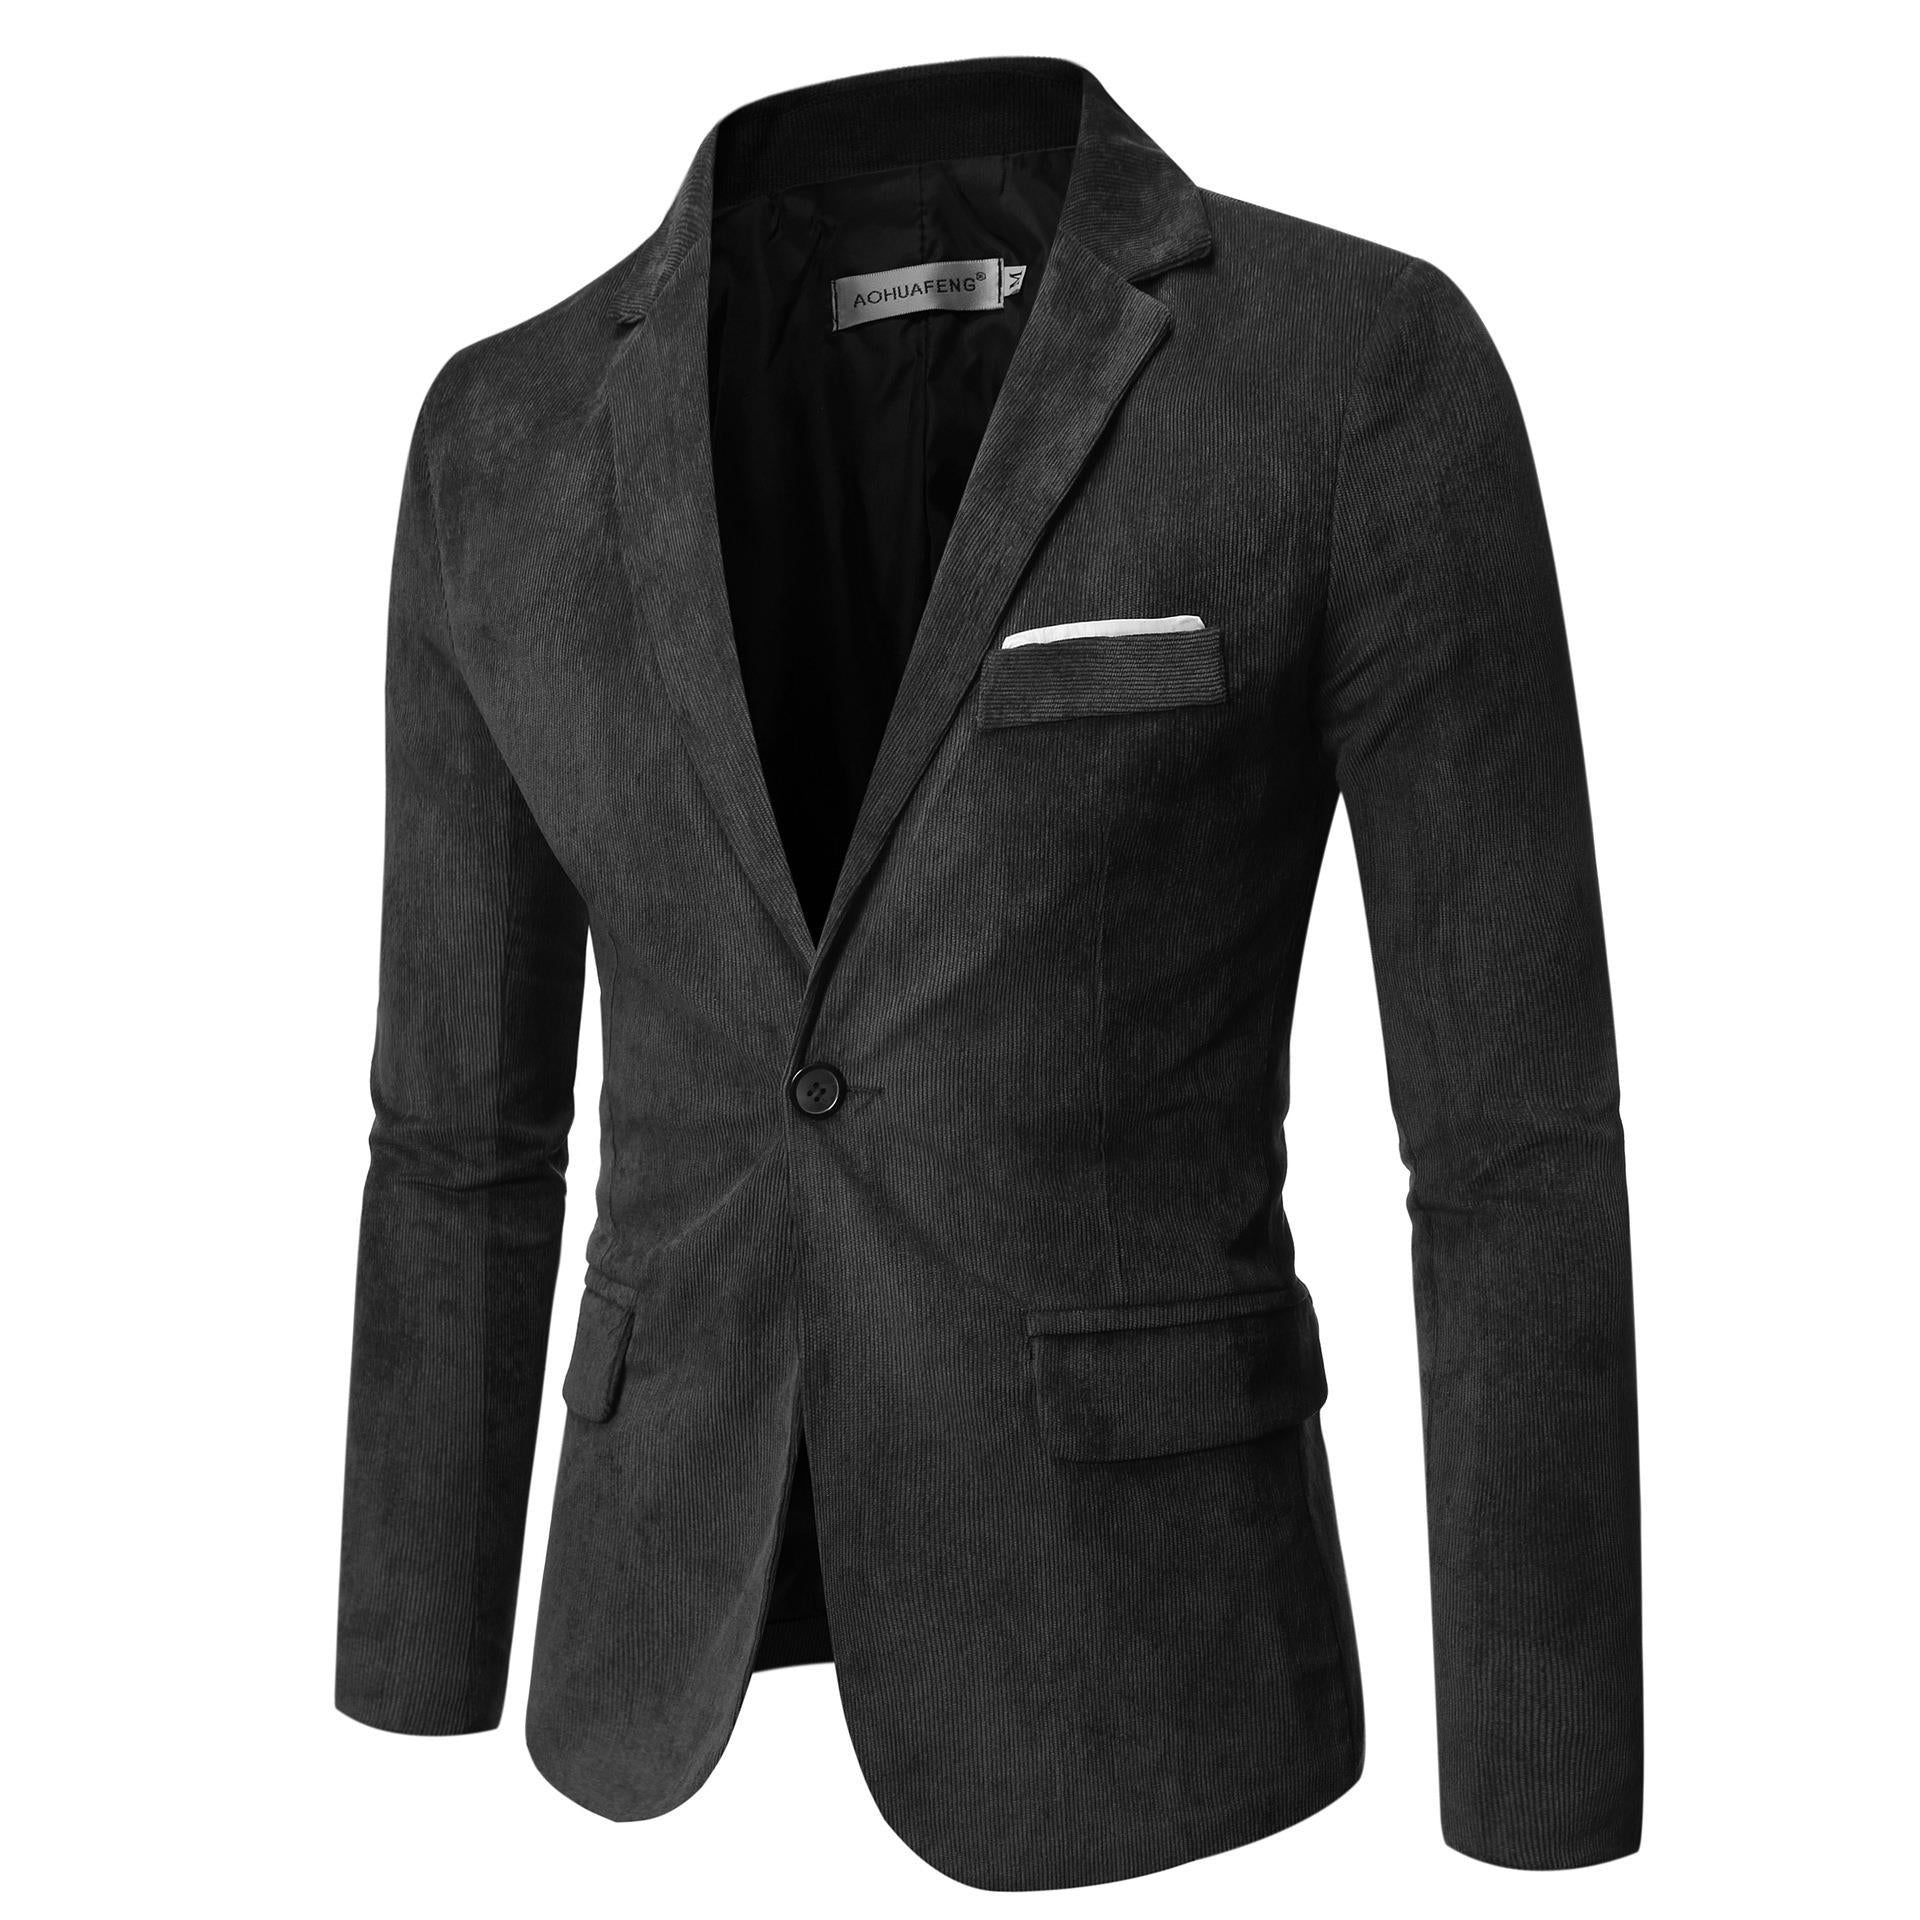 Men's Solid Color One Button Suit Coat